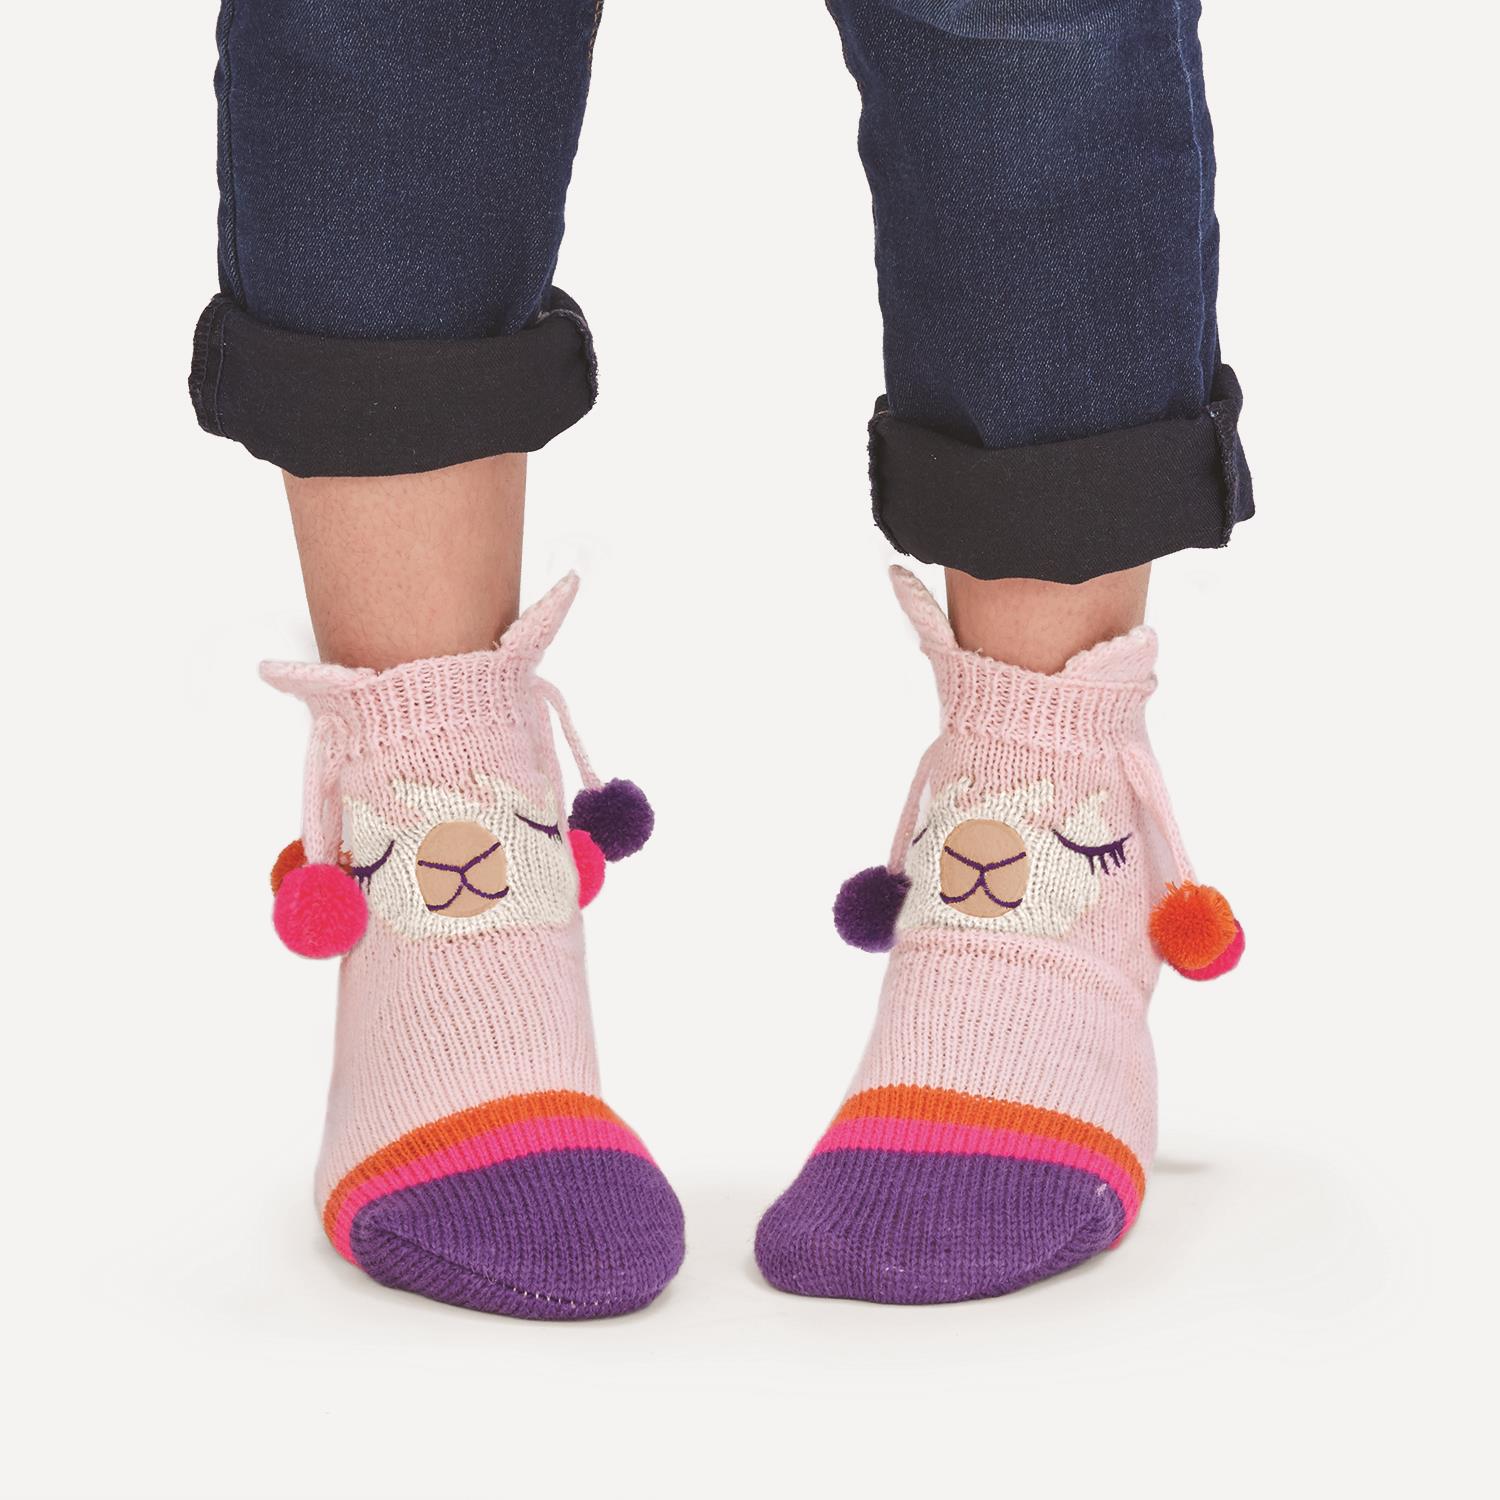 childrens slipper socks